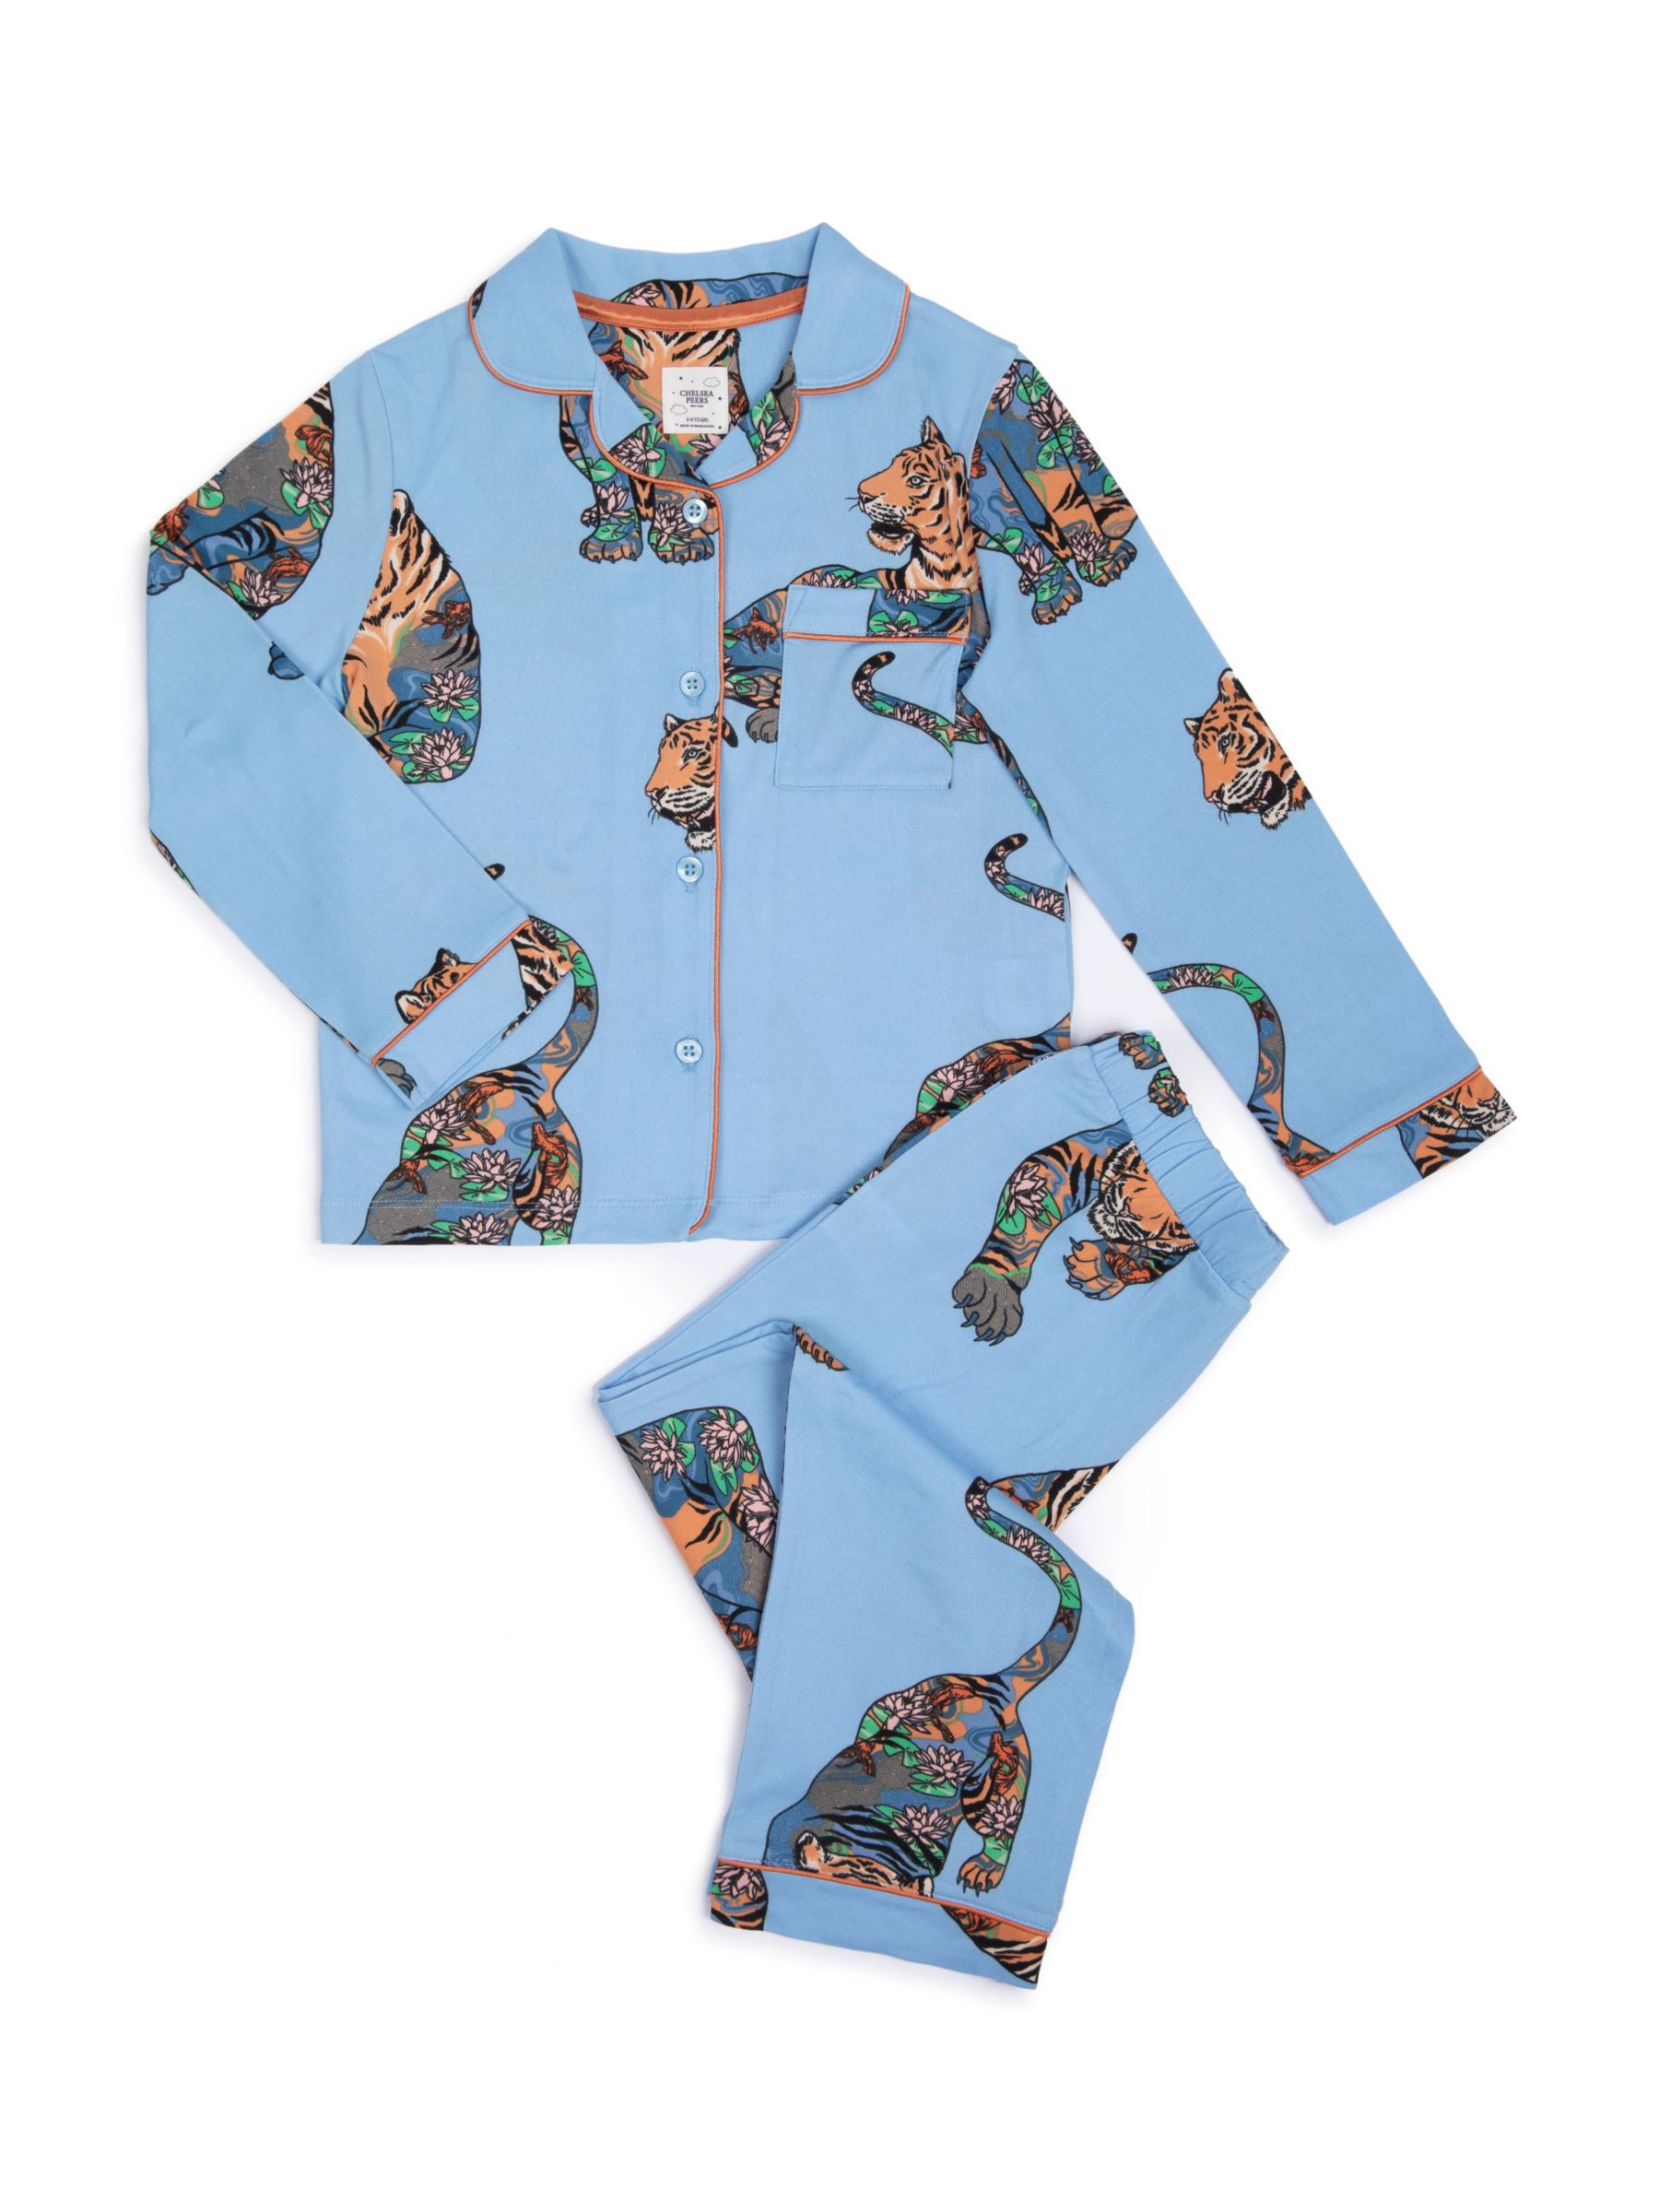 Chelsea Peers Kids' Tiger Print Long Pyjama Set, Blue/Multi, 1-2 years